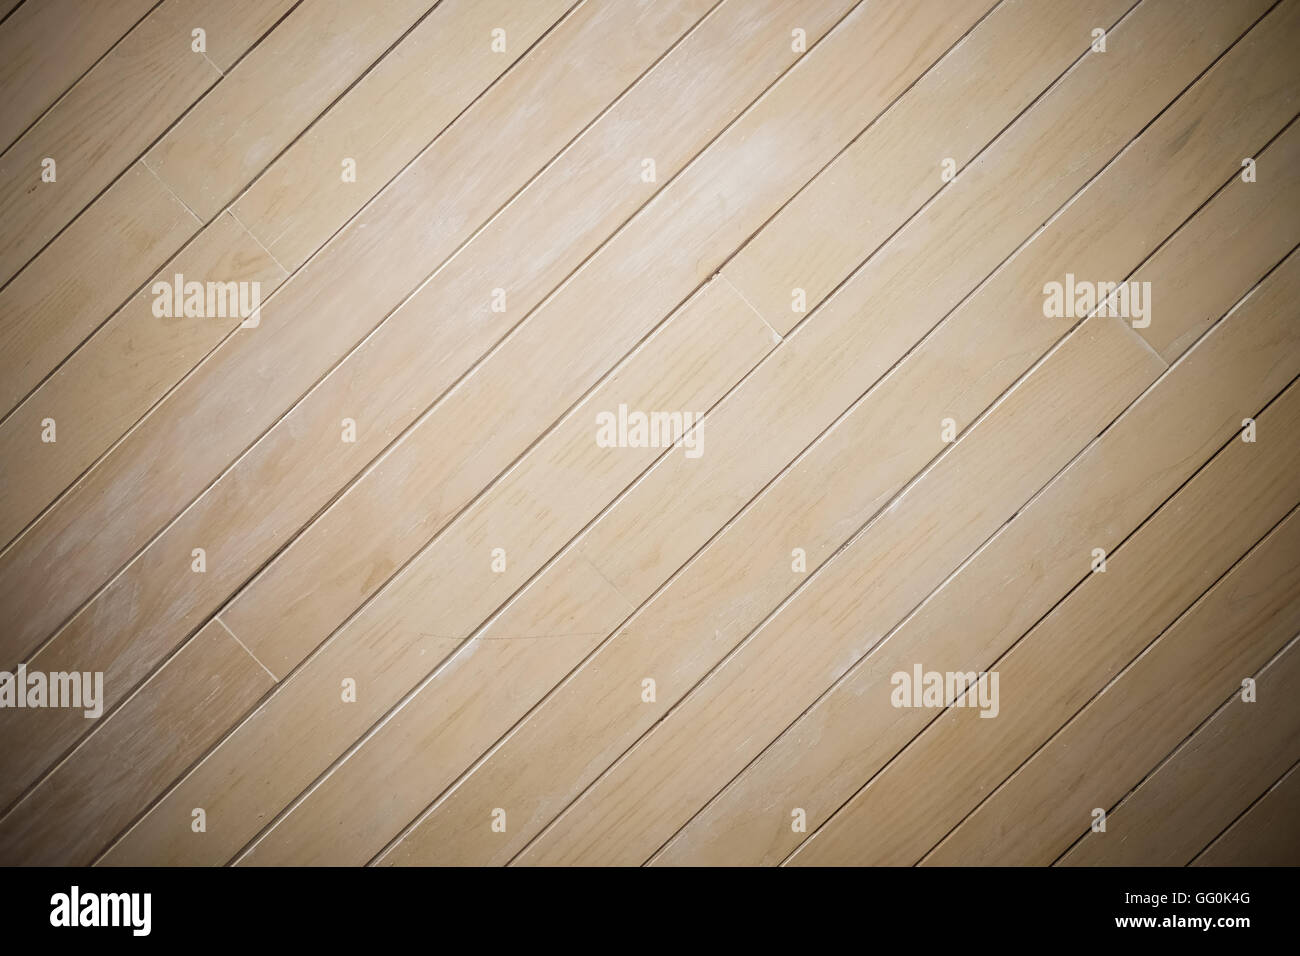 Laminat Holz Wand Textur Hintergrund, Mitte Fokus, dunkler Rand, Muster mit diagonalen Streifen Stockfoto